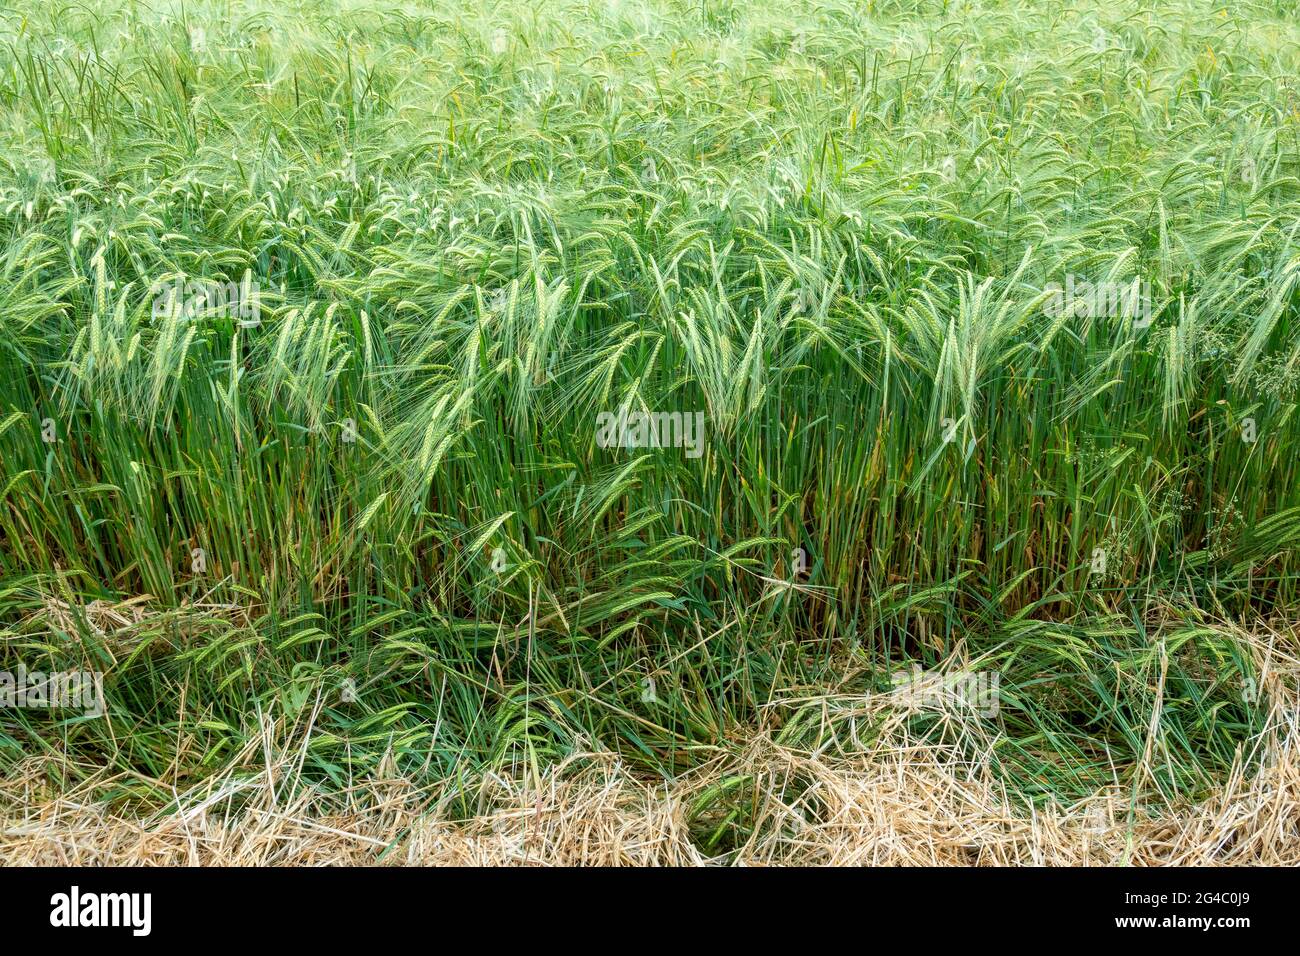 Zone détaillée d'une jeune récolte d'orge verte à deux rangées dans un champ Banque D'Images